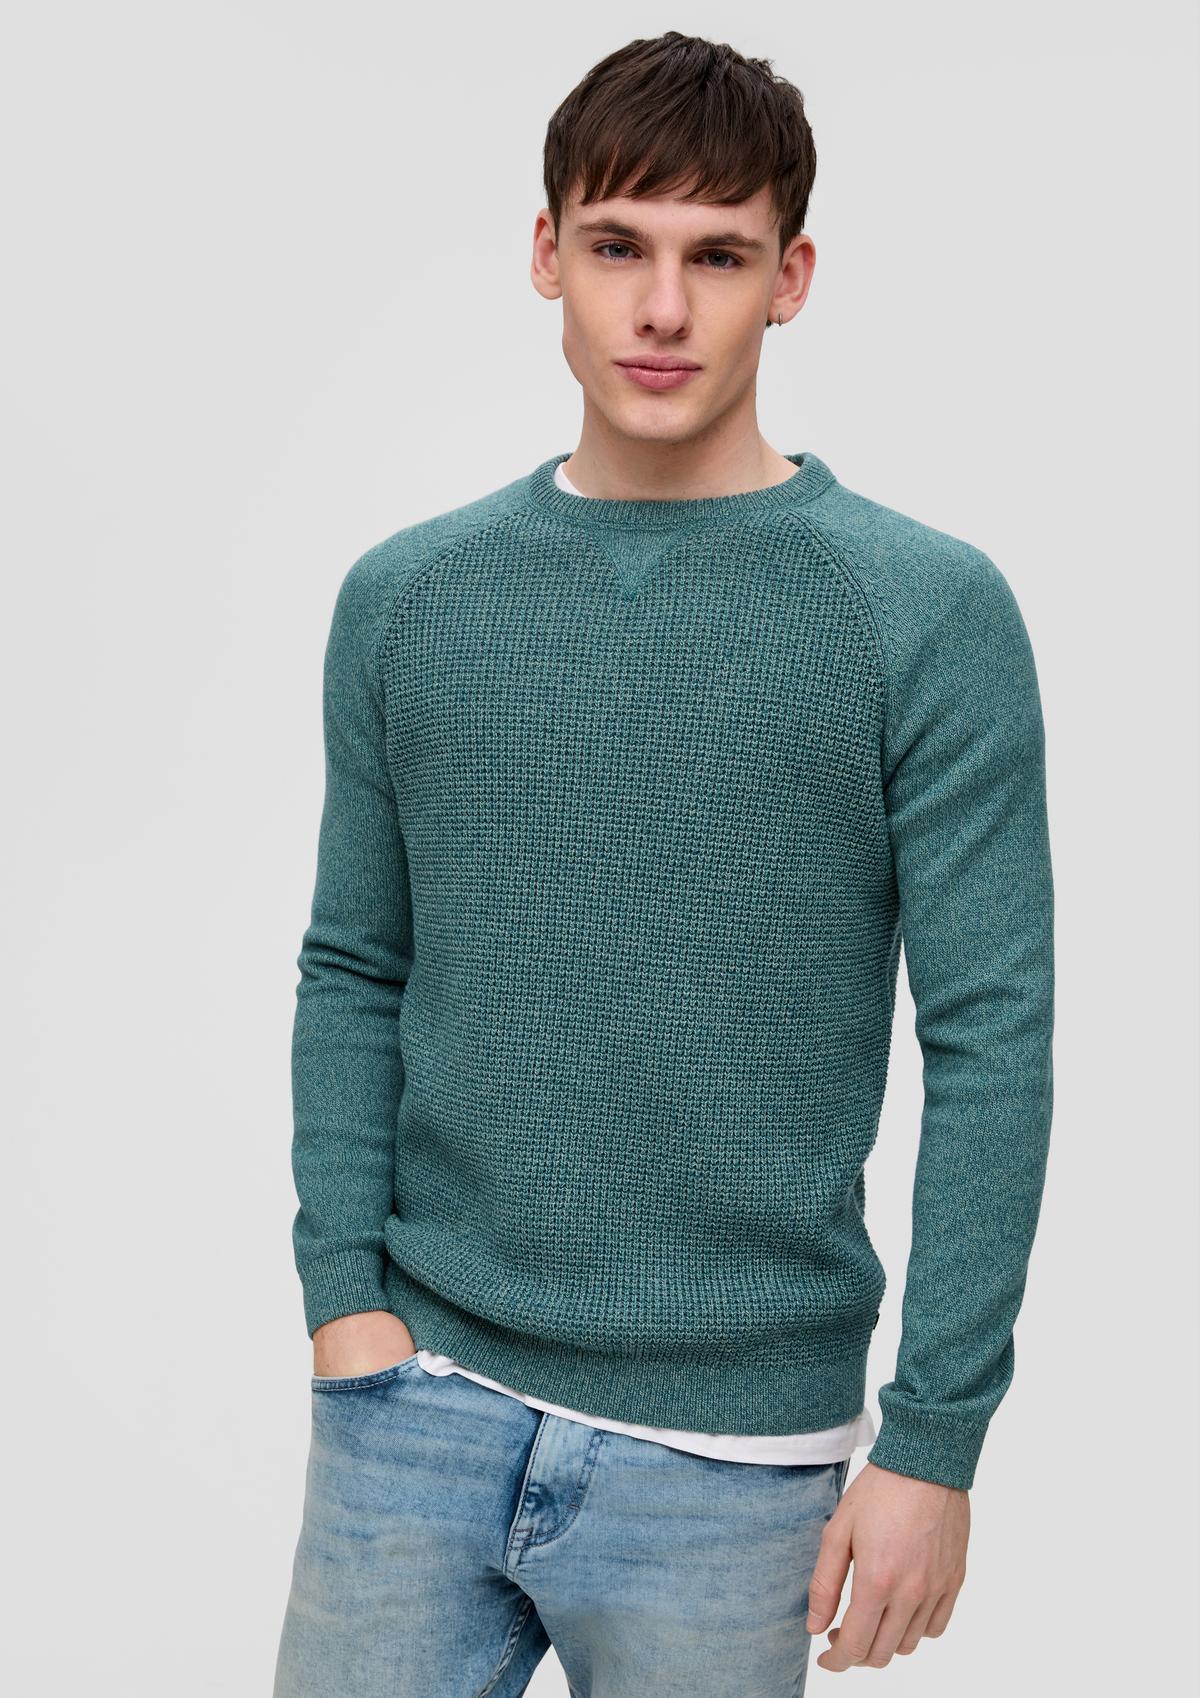 Herren-Pullover kaufen online